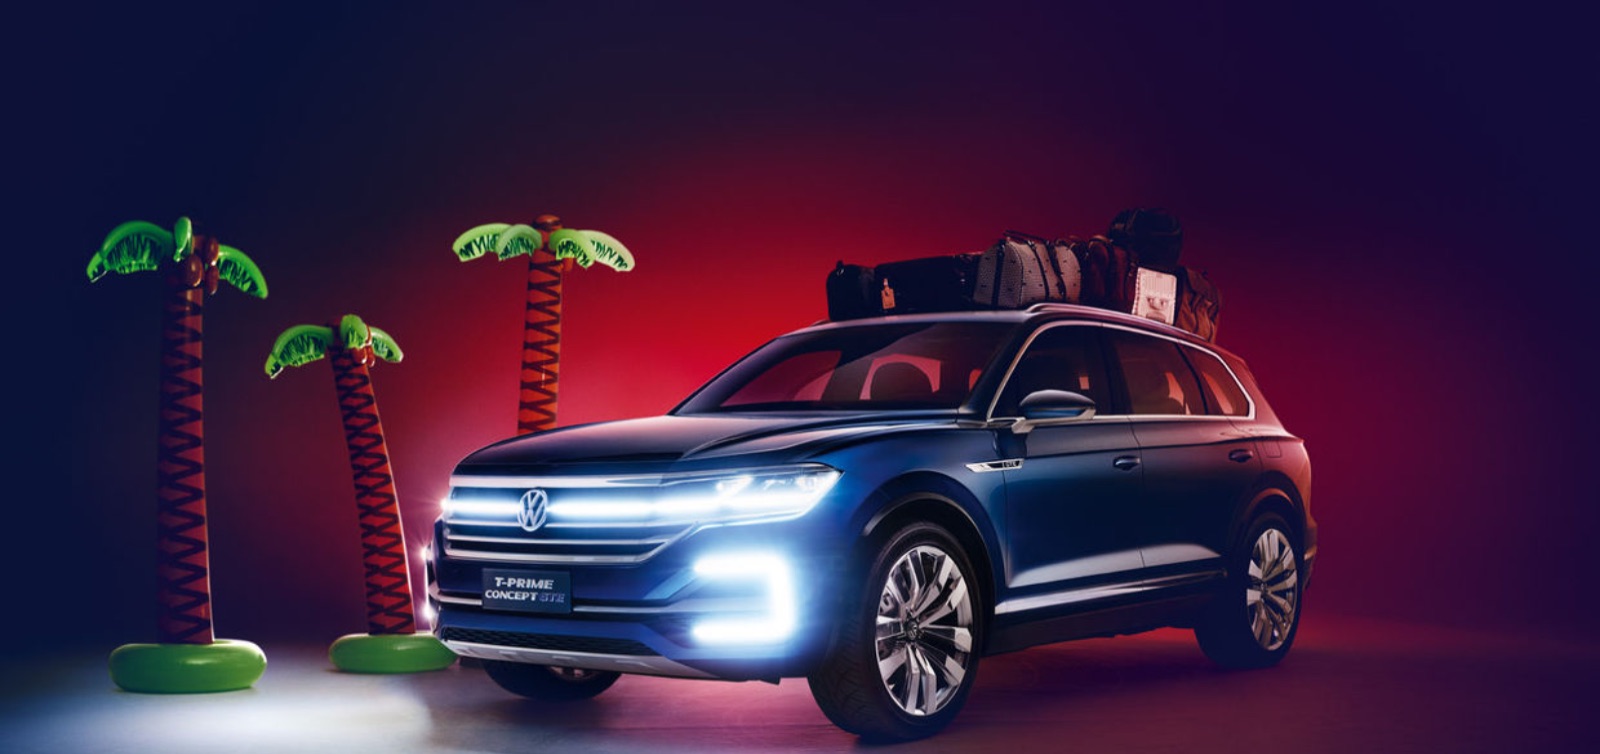 Volkswagen Touareg 2018: la nuova generazione è pronta e i prezzi non dovrebbero discostarsi molto dal modello attuale.